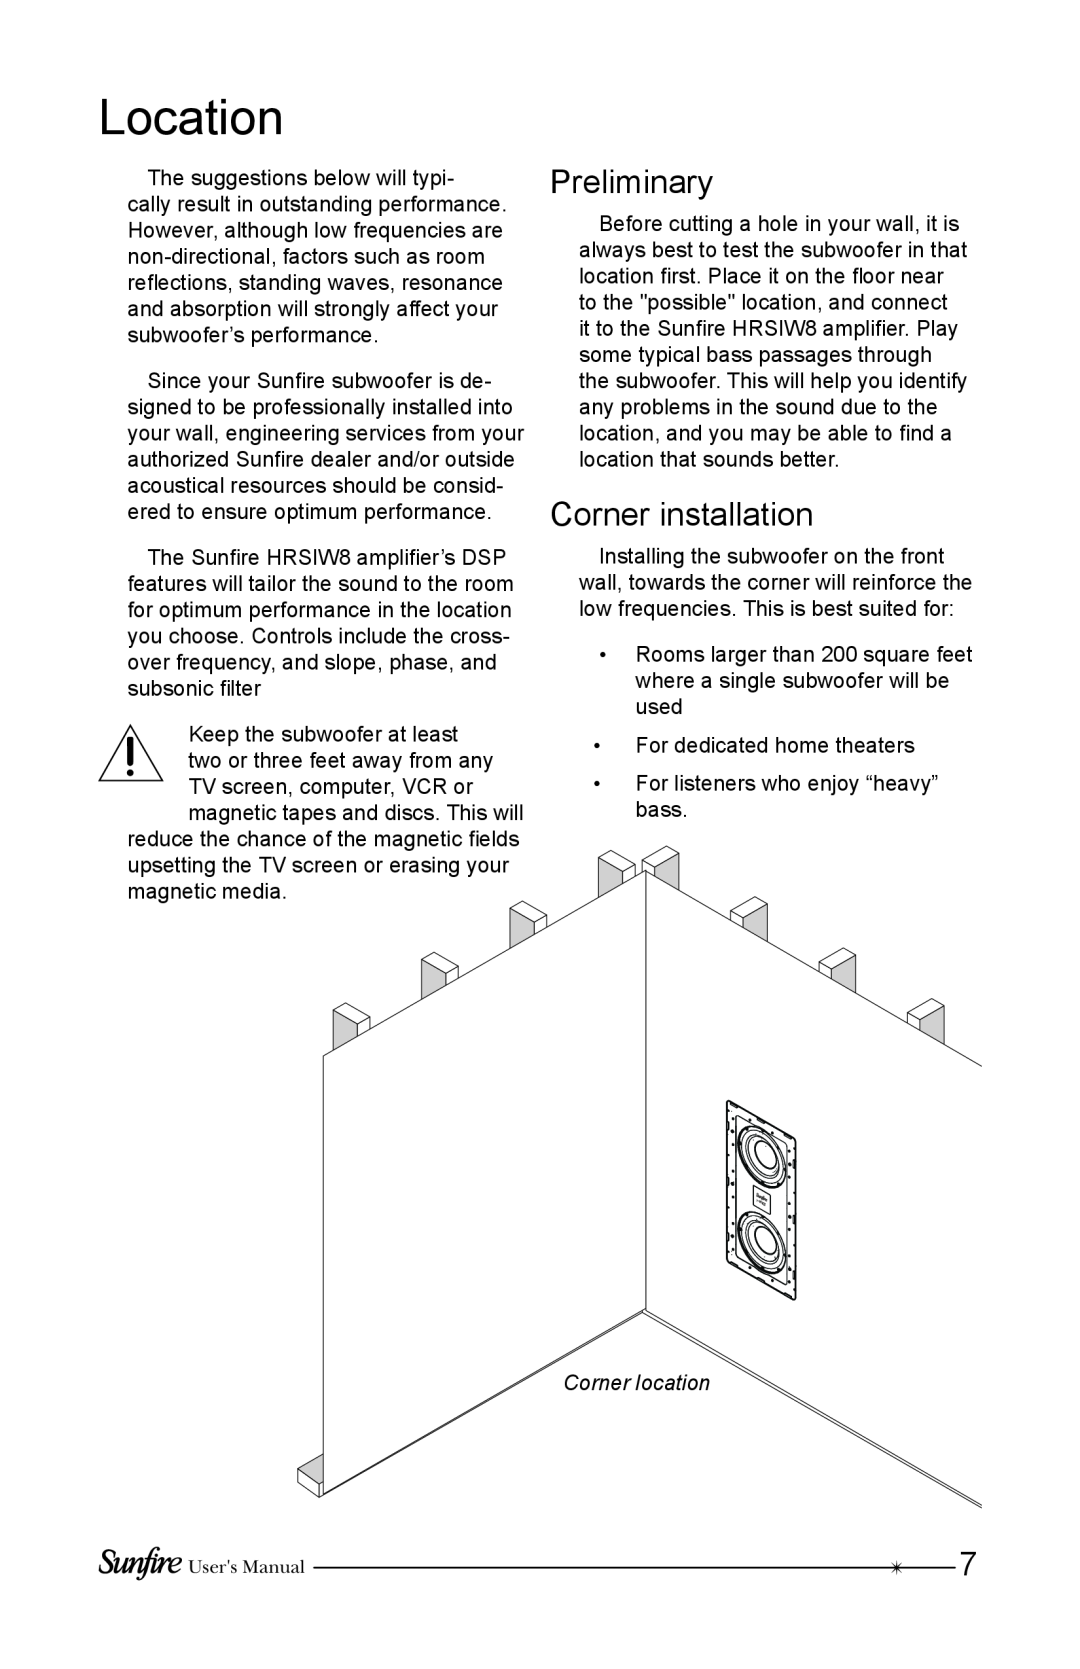 Sunfire HRSIW8 user manual Location, Preliminary, Corner installation, Corner location 